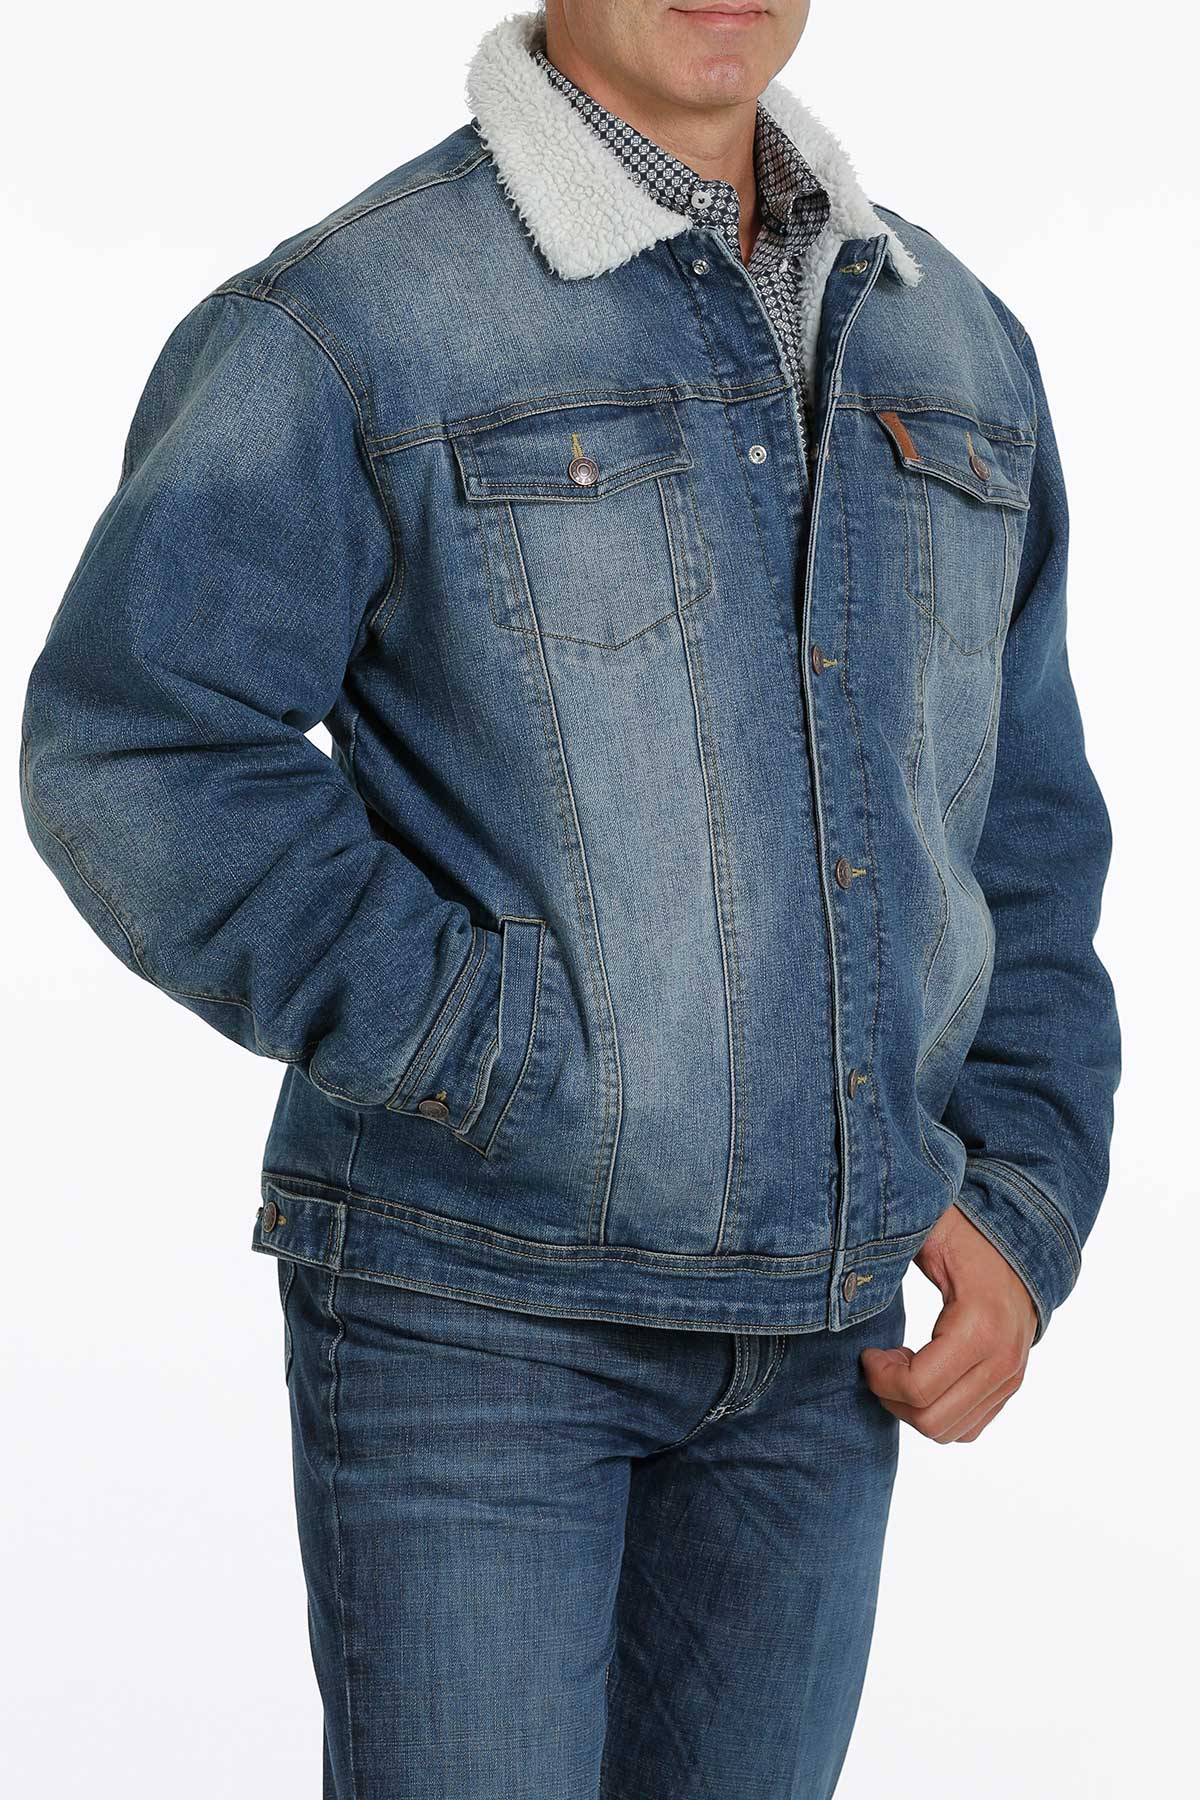 CINCH Men's Denim Trucker Jacket